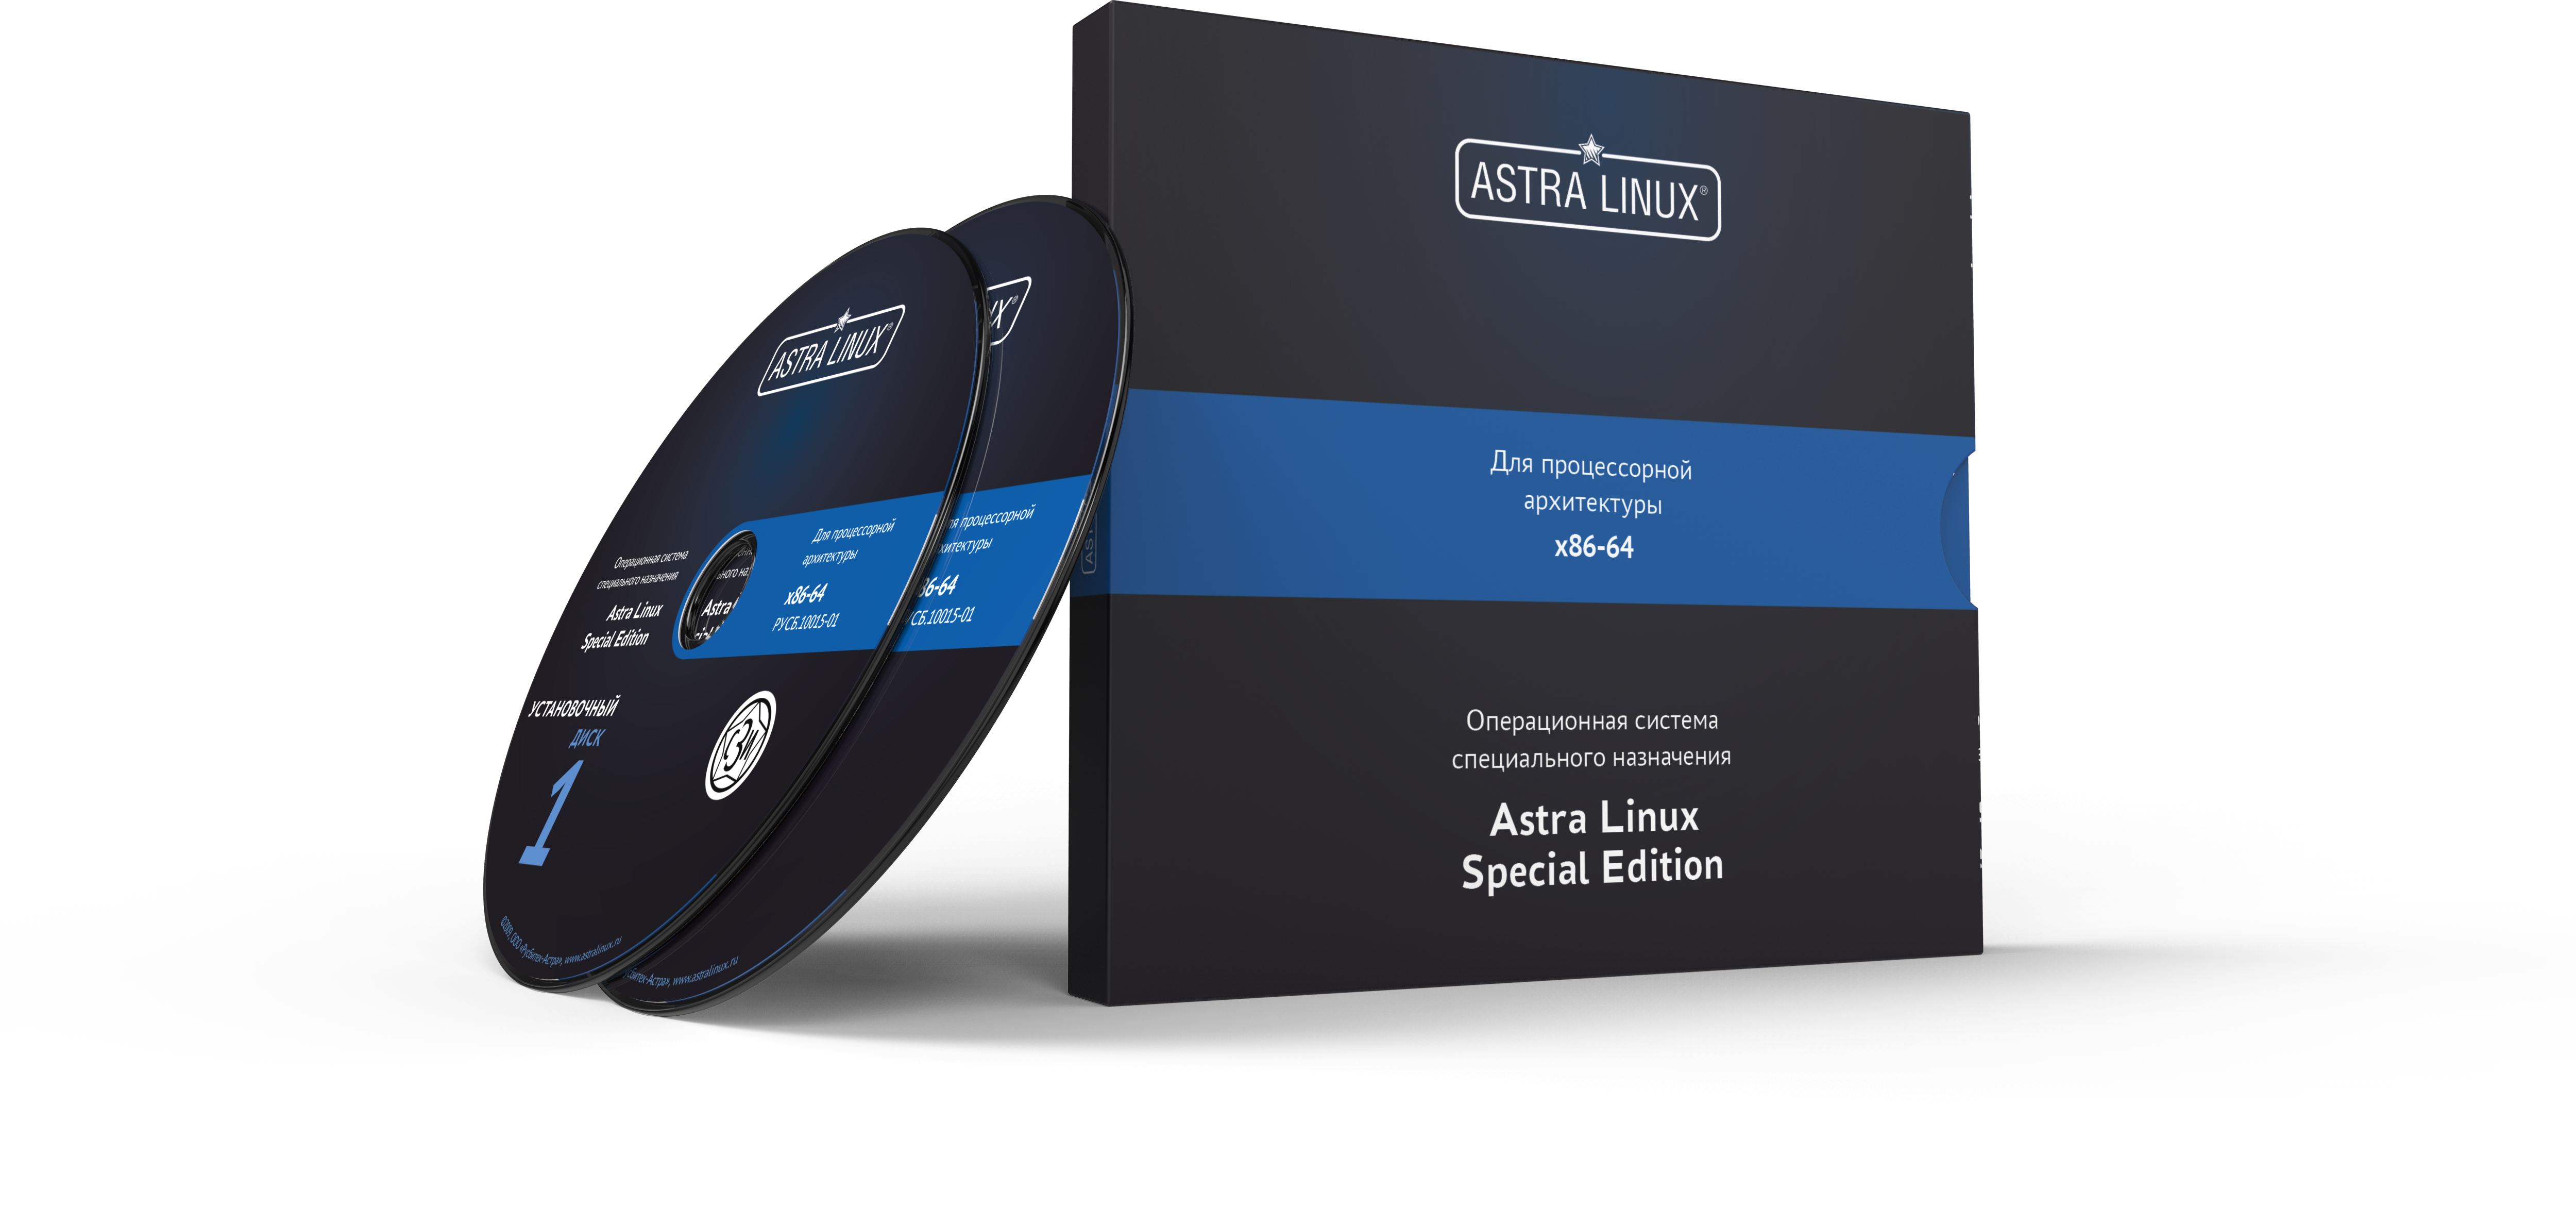 Astra Linux Special Edition 1.7 - Воронеж, для рабочей станции, электронный, "Усиленный", на 36 мес., ТП "Привилегированная" на 36 мес.